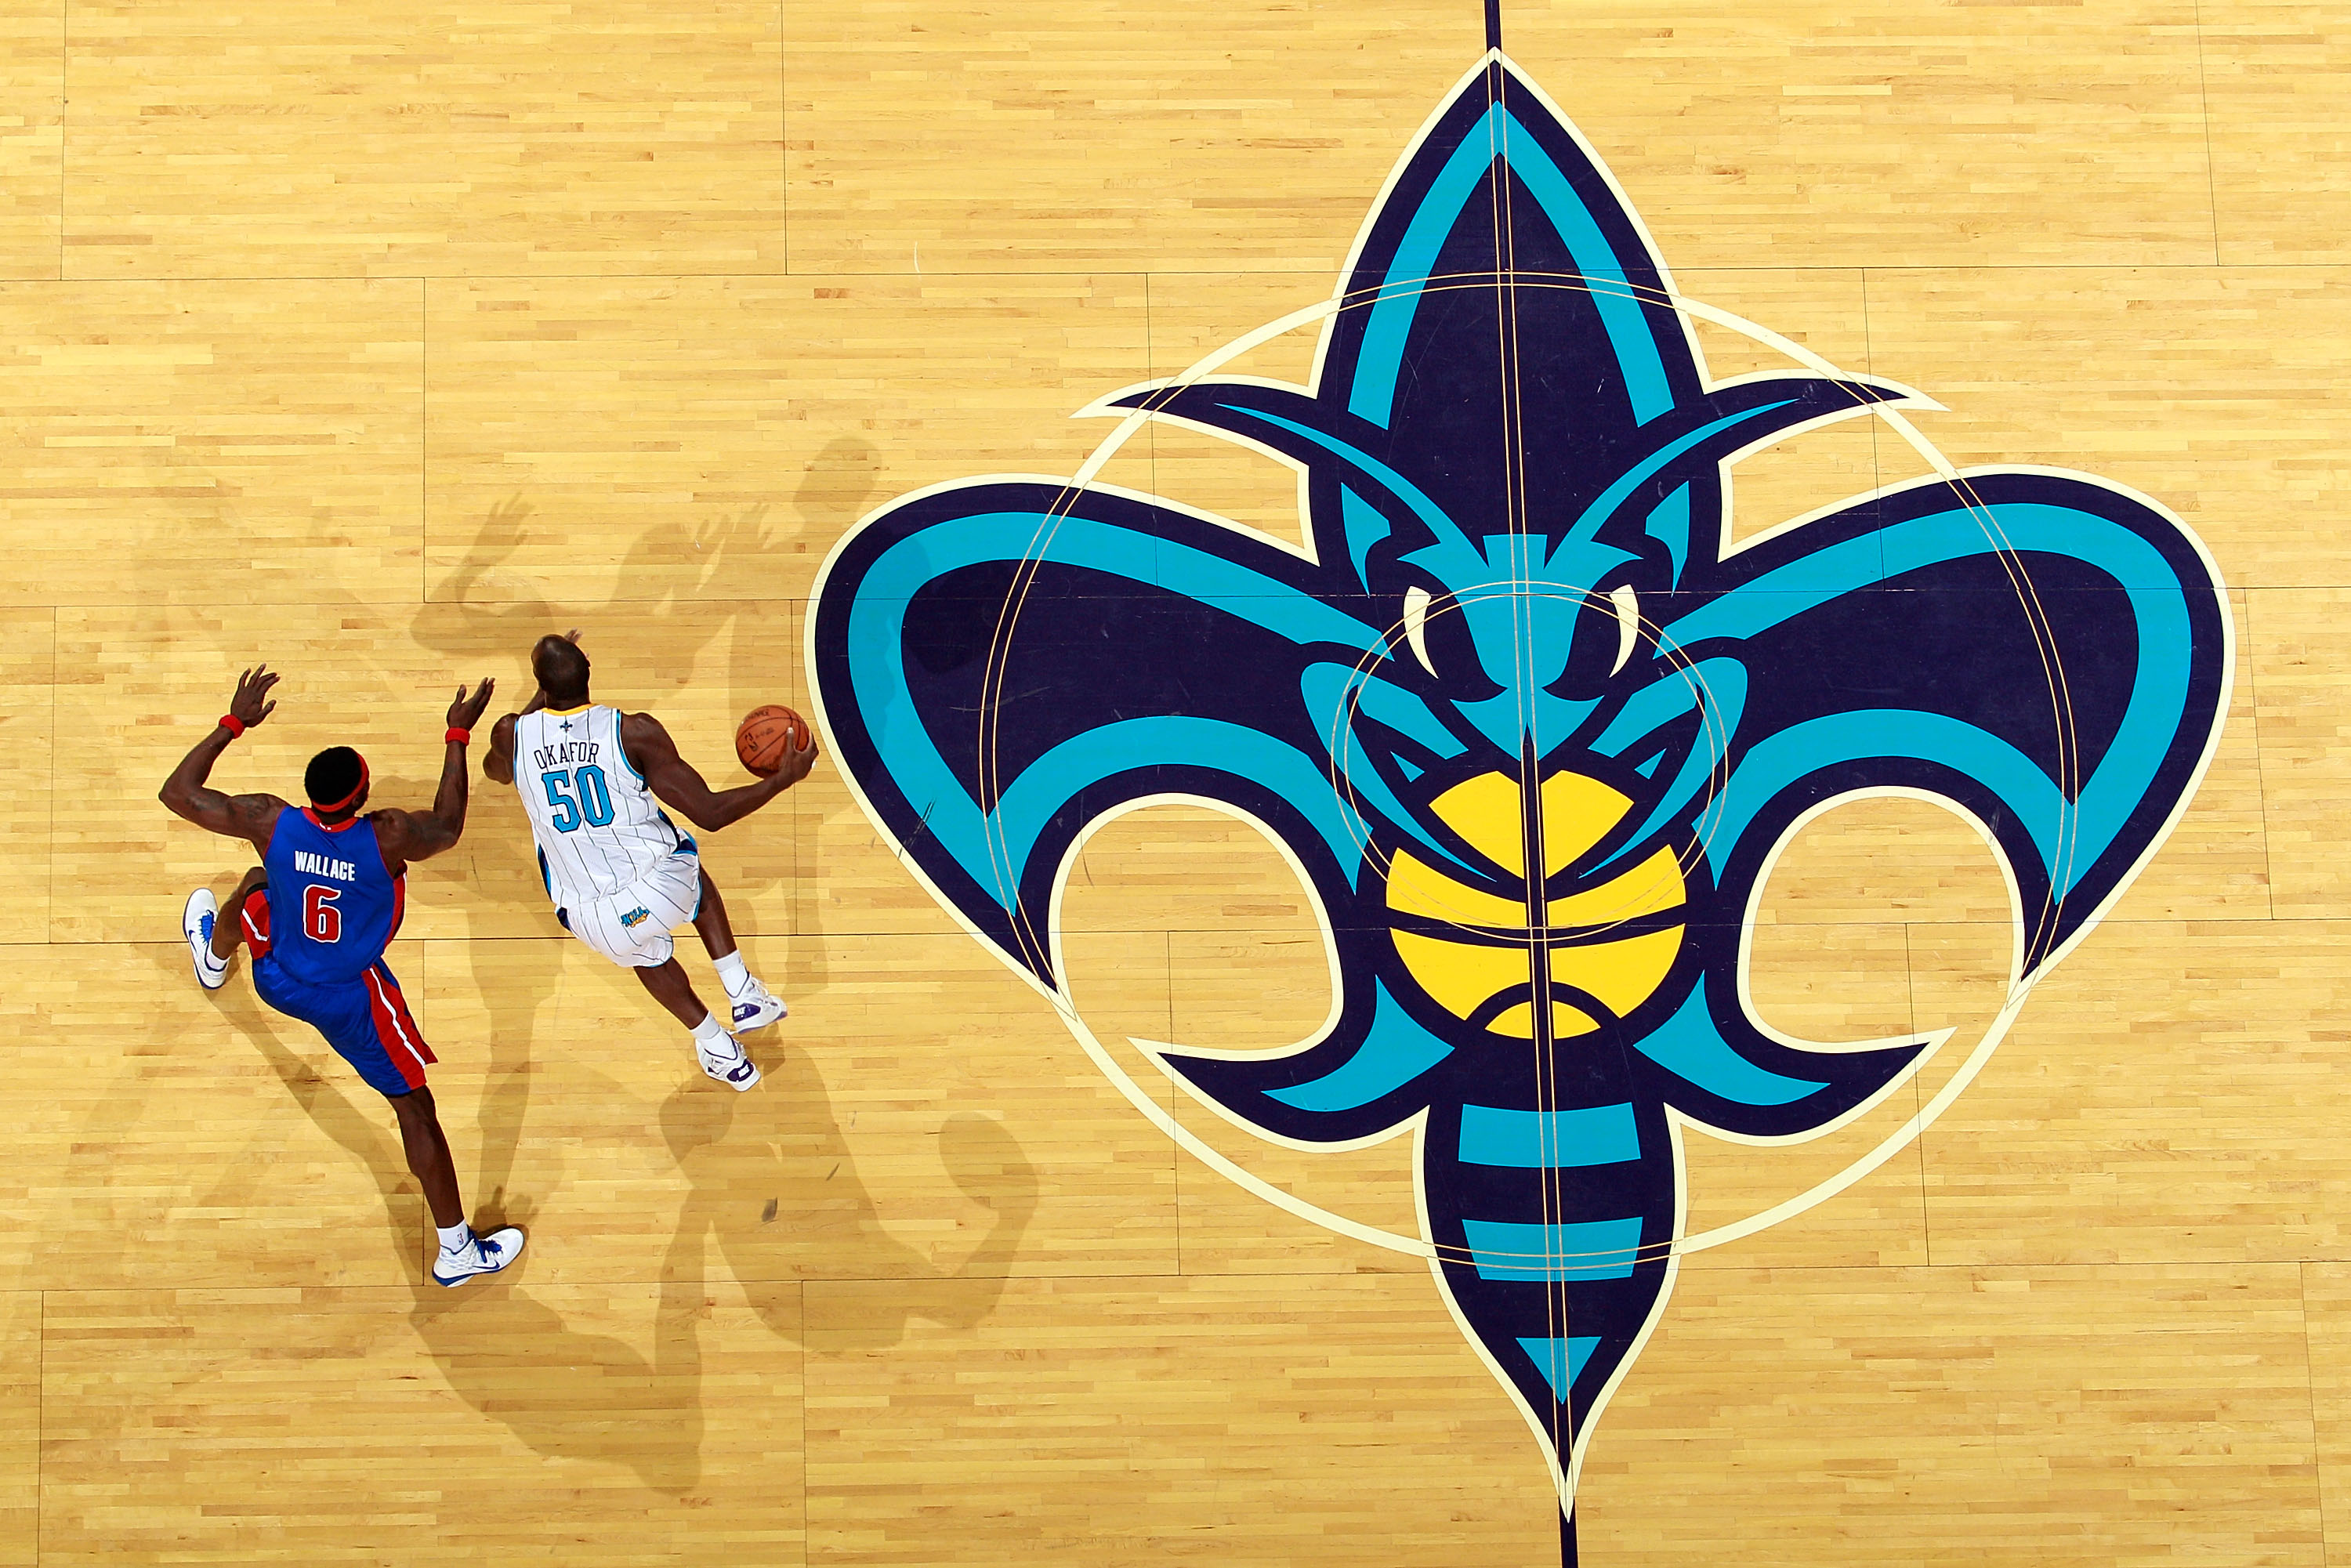 New Orleans Hornets 